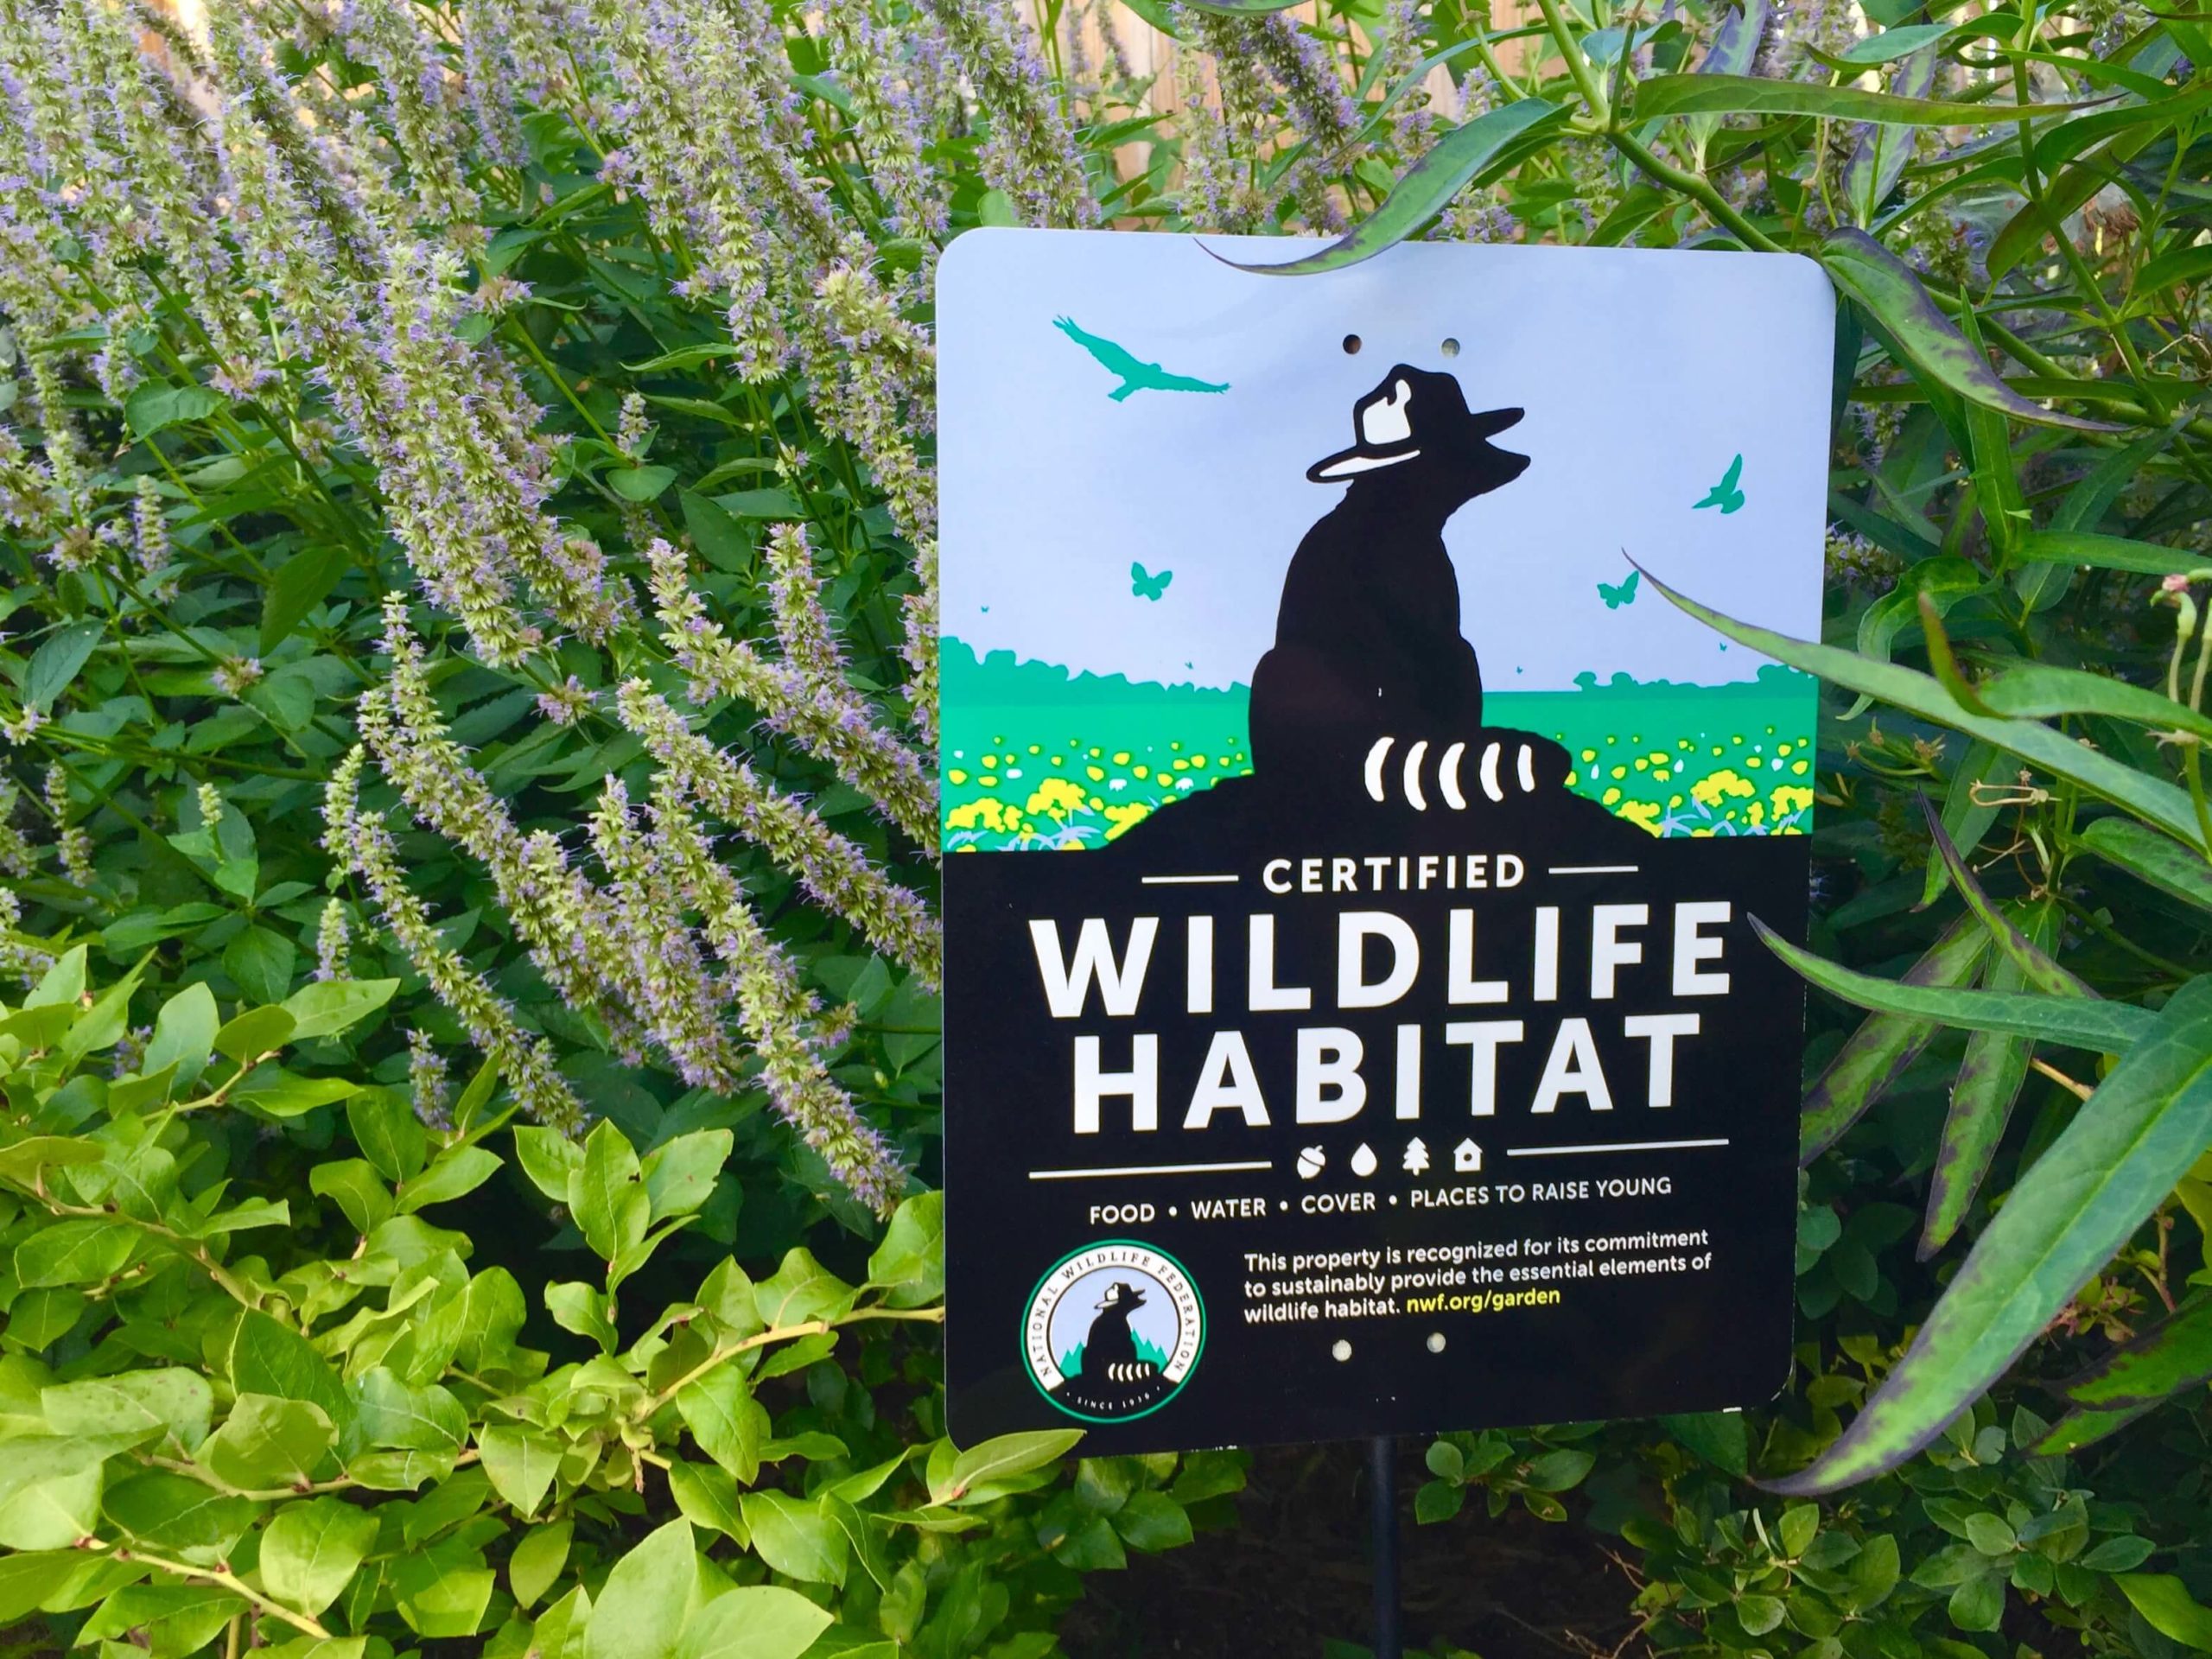 National Wildlife Federation Wildlife Habitat Sign.